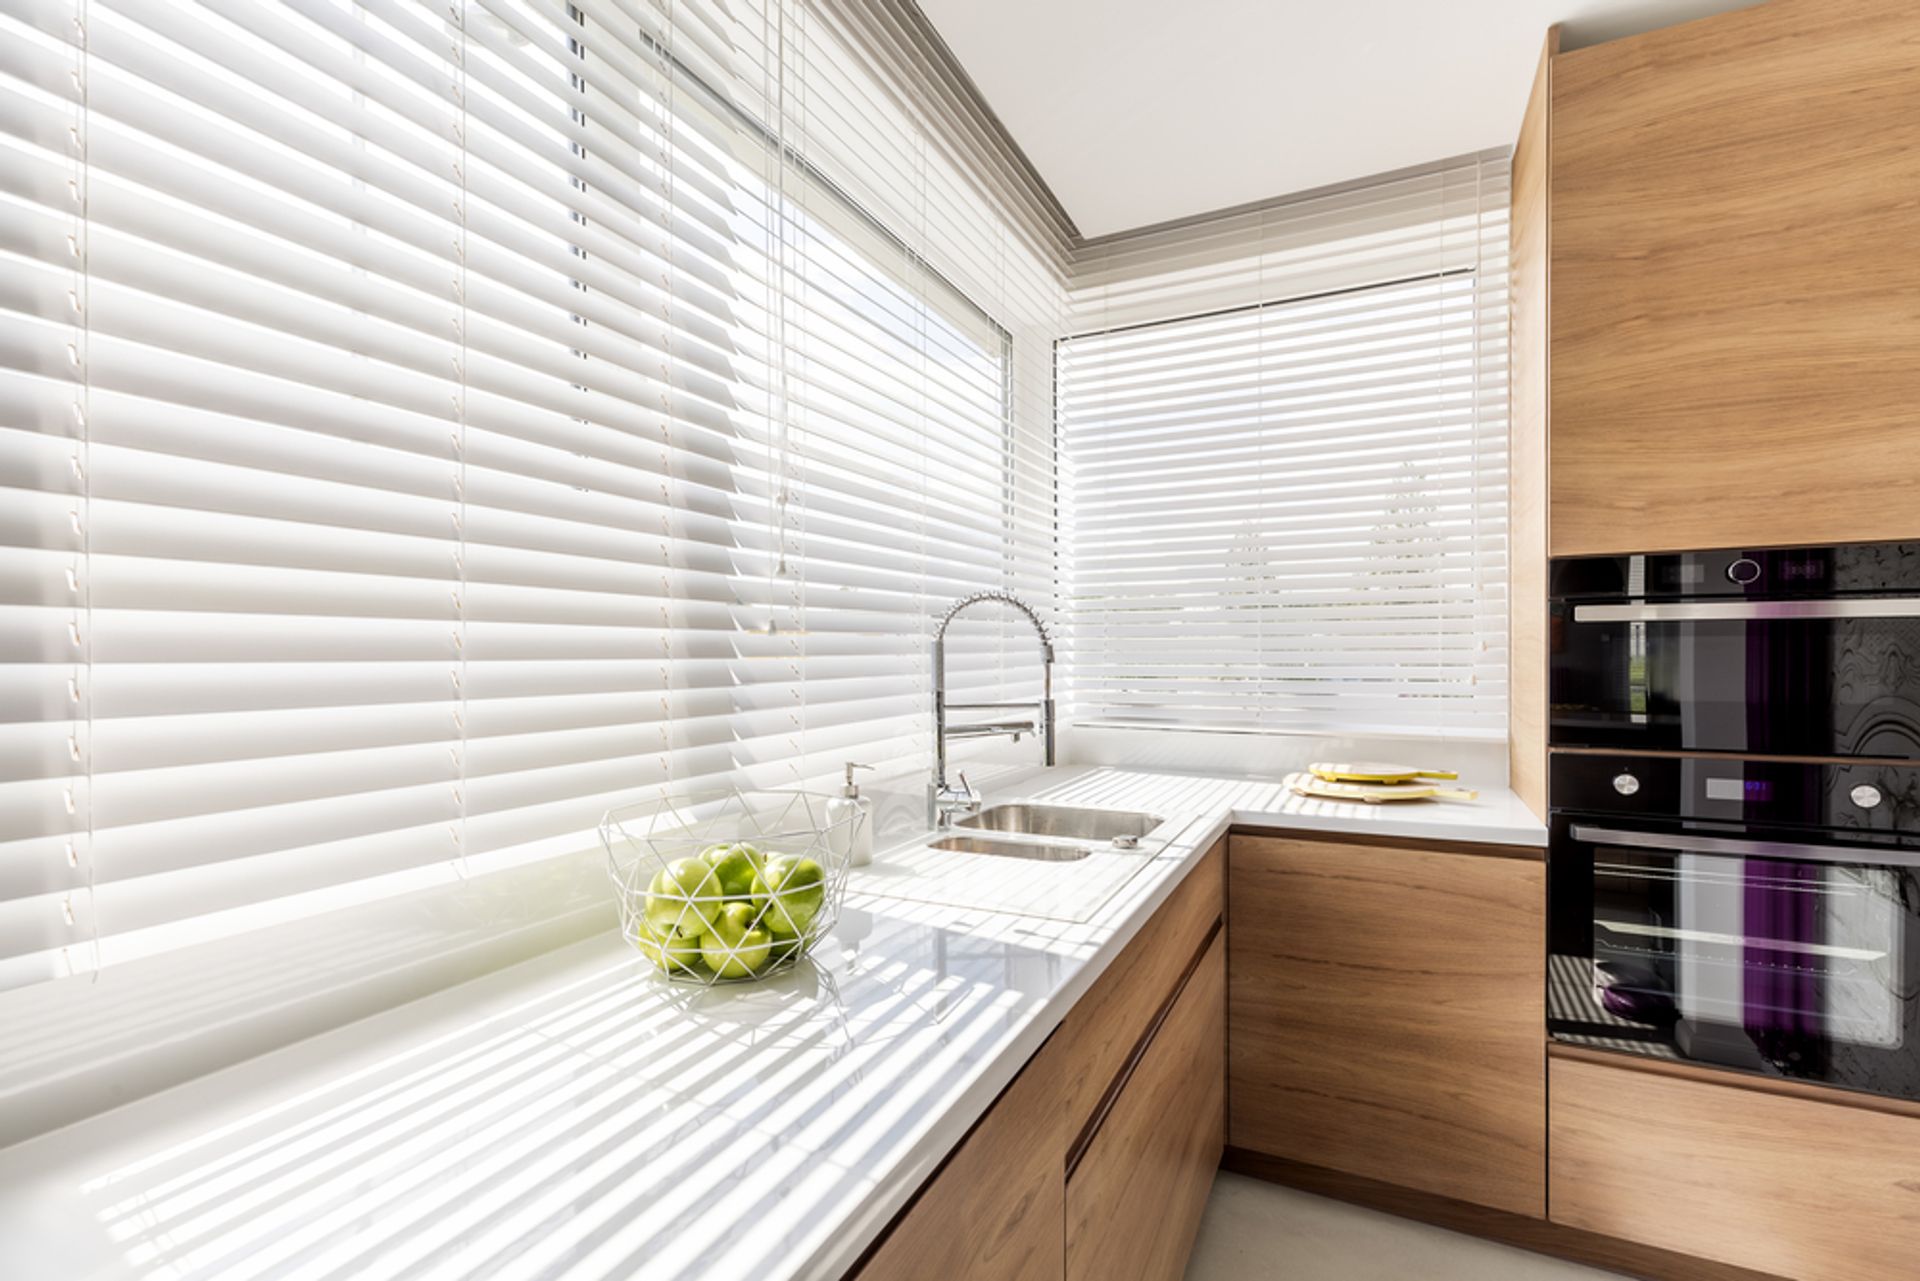 Nylon Absoluut Verdorren Welke raamdecoratie kies ik best in mijn keuken of badkamer? | Huis  Castermans